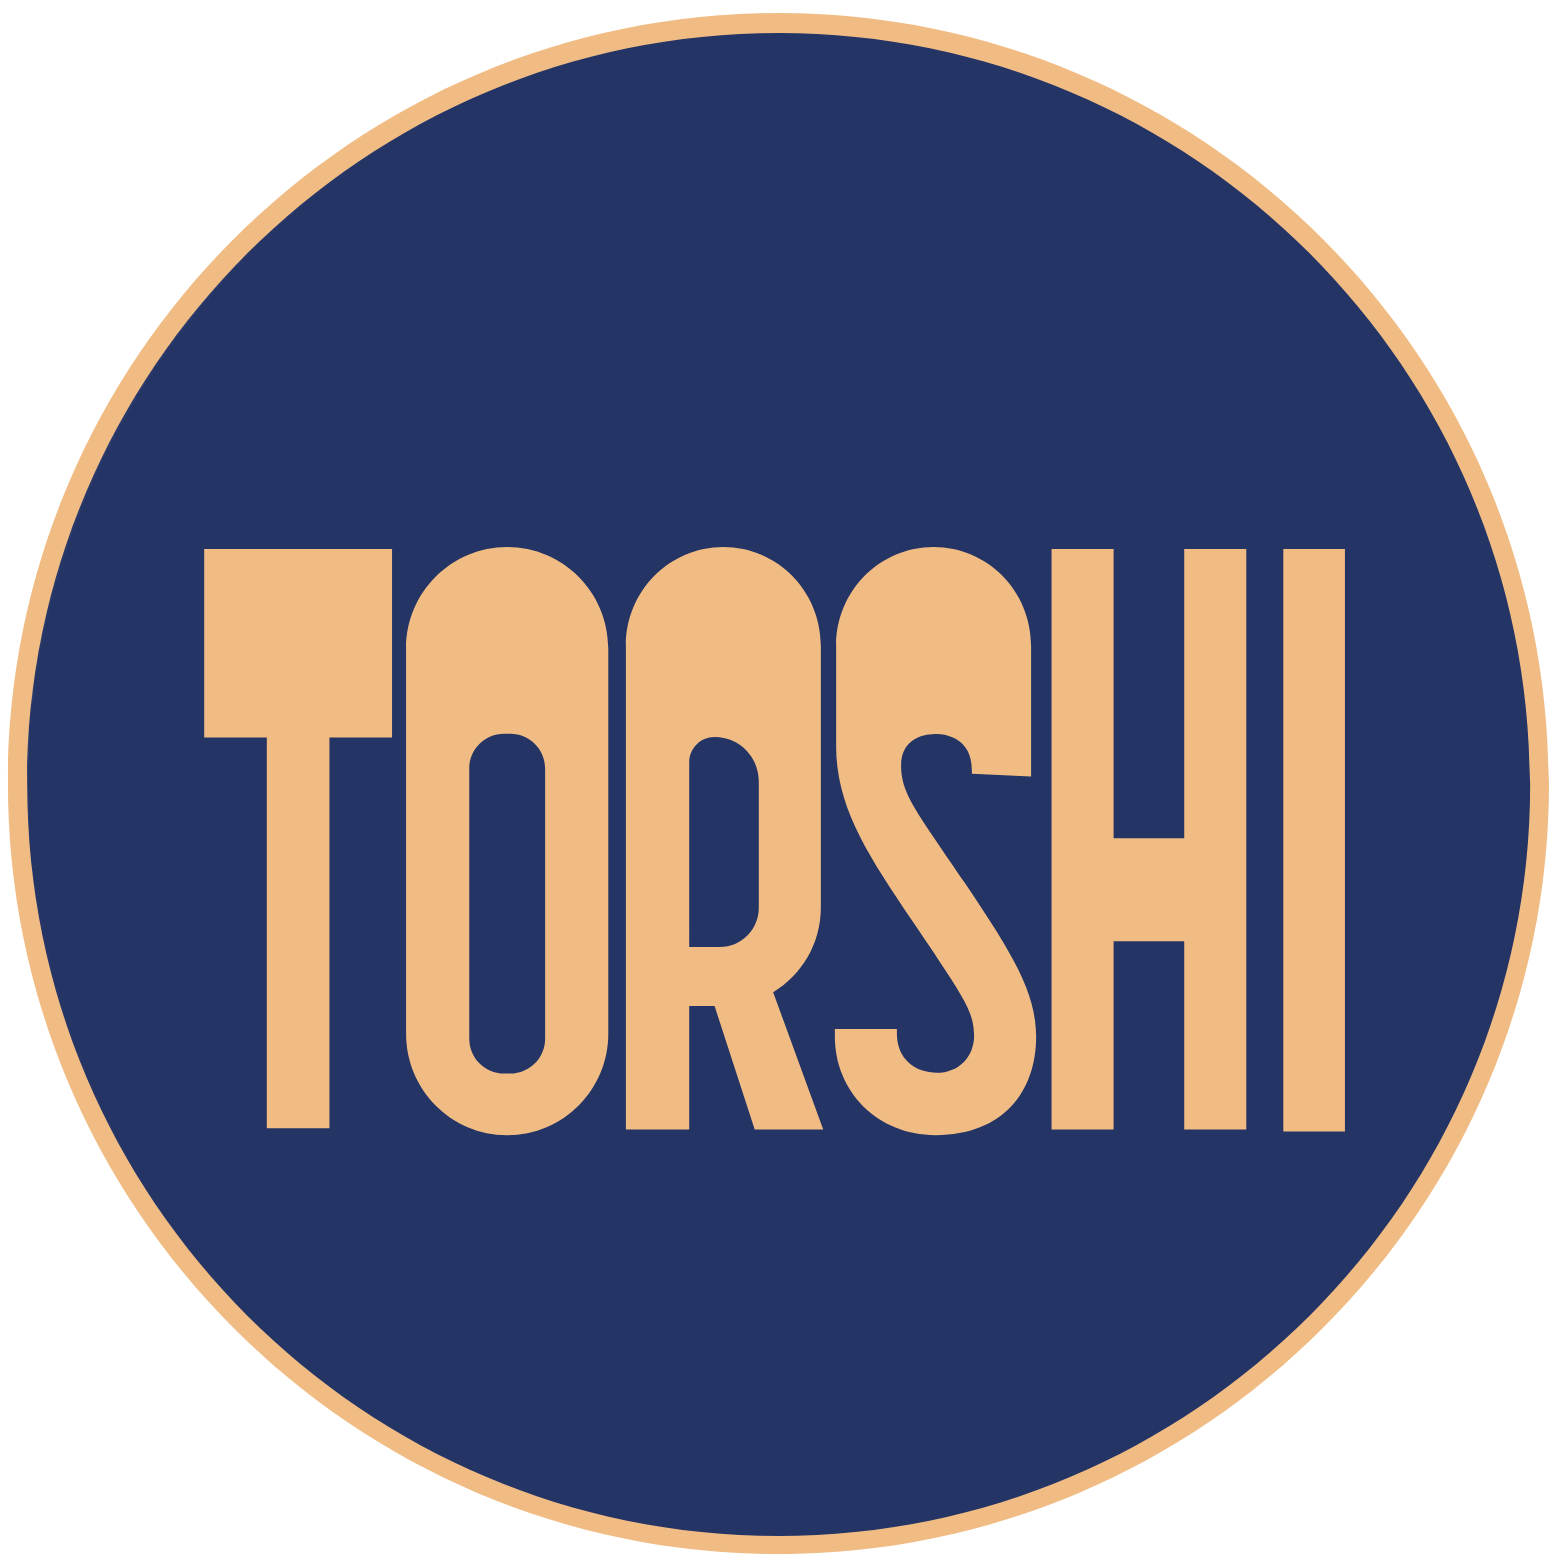 Torshi